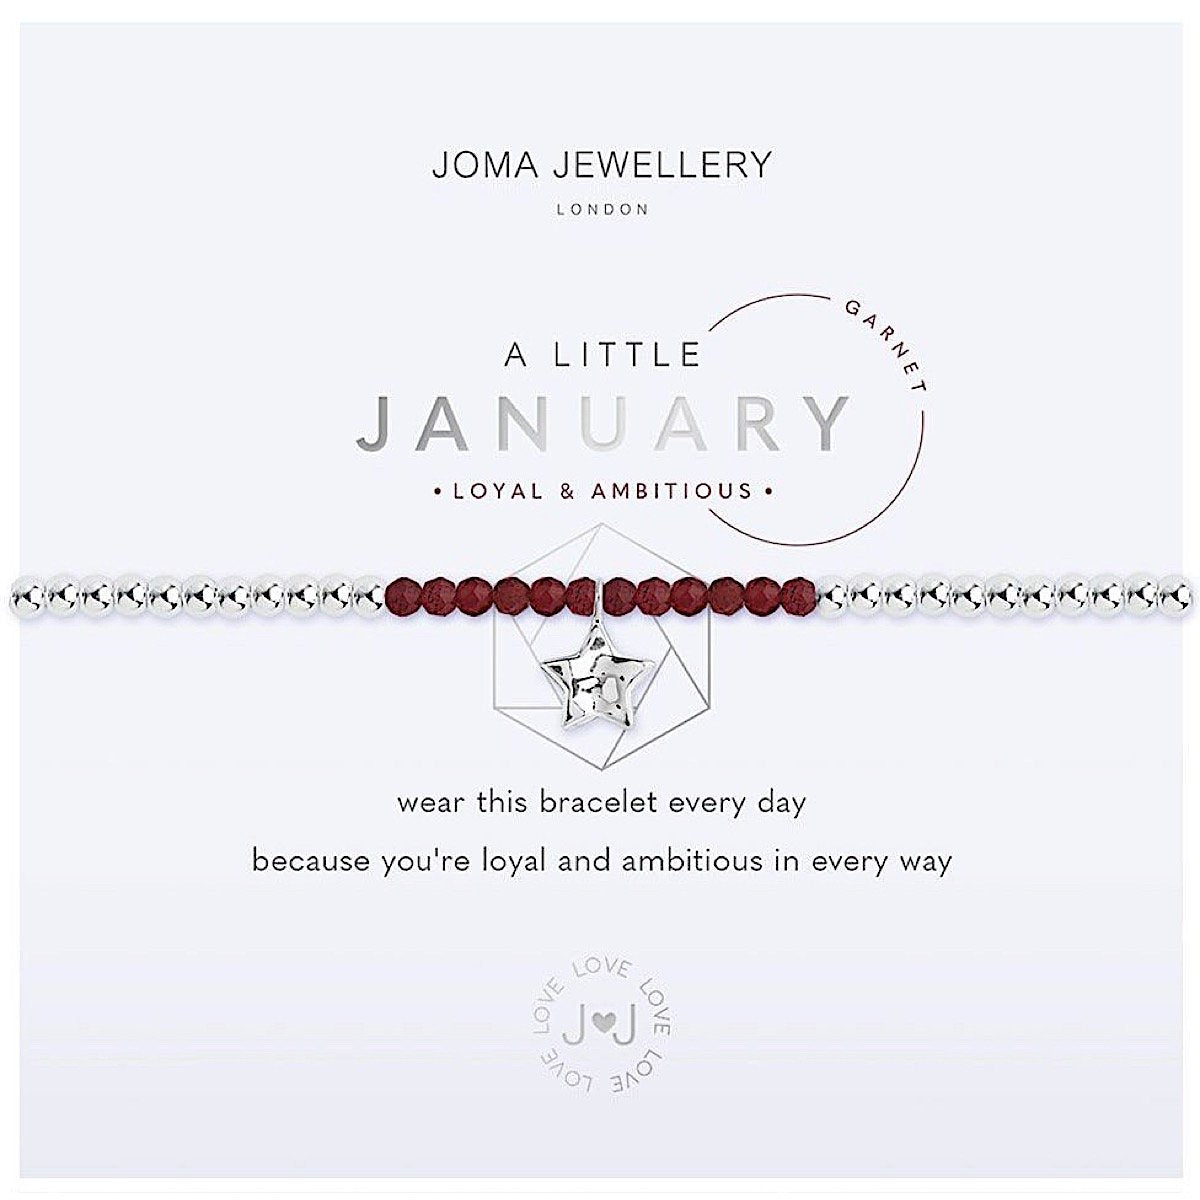 Joma Jewellery - January Birthstone - Garnet- Loyal & Ambitious